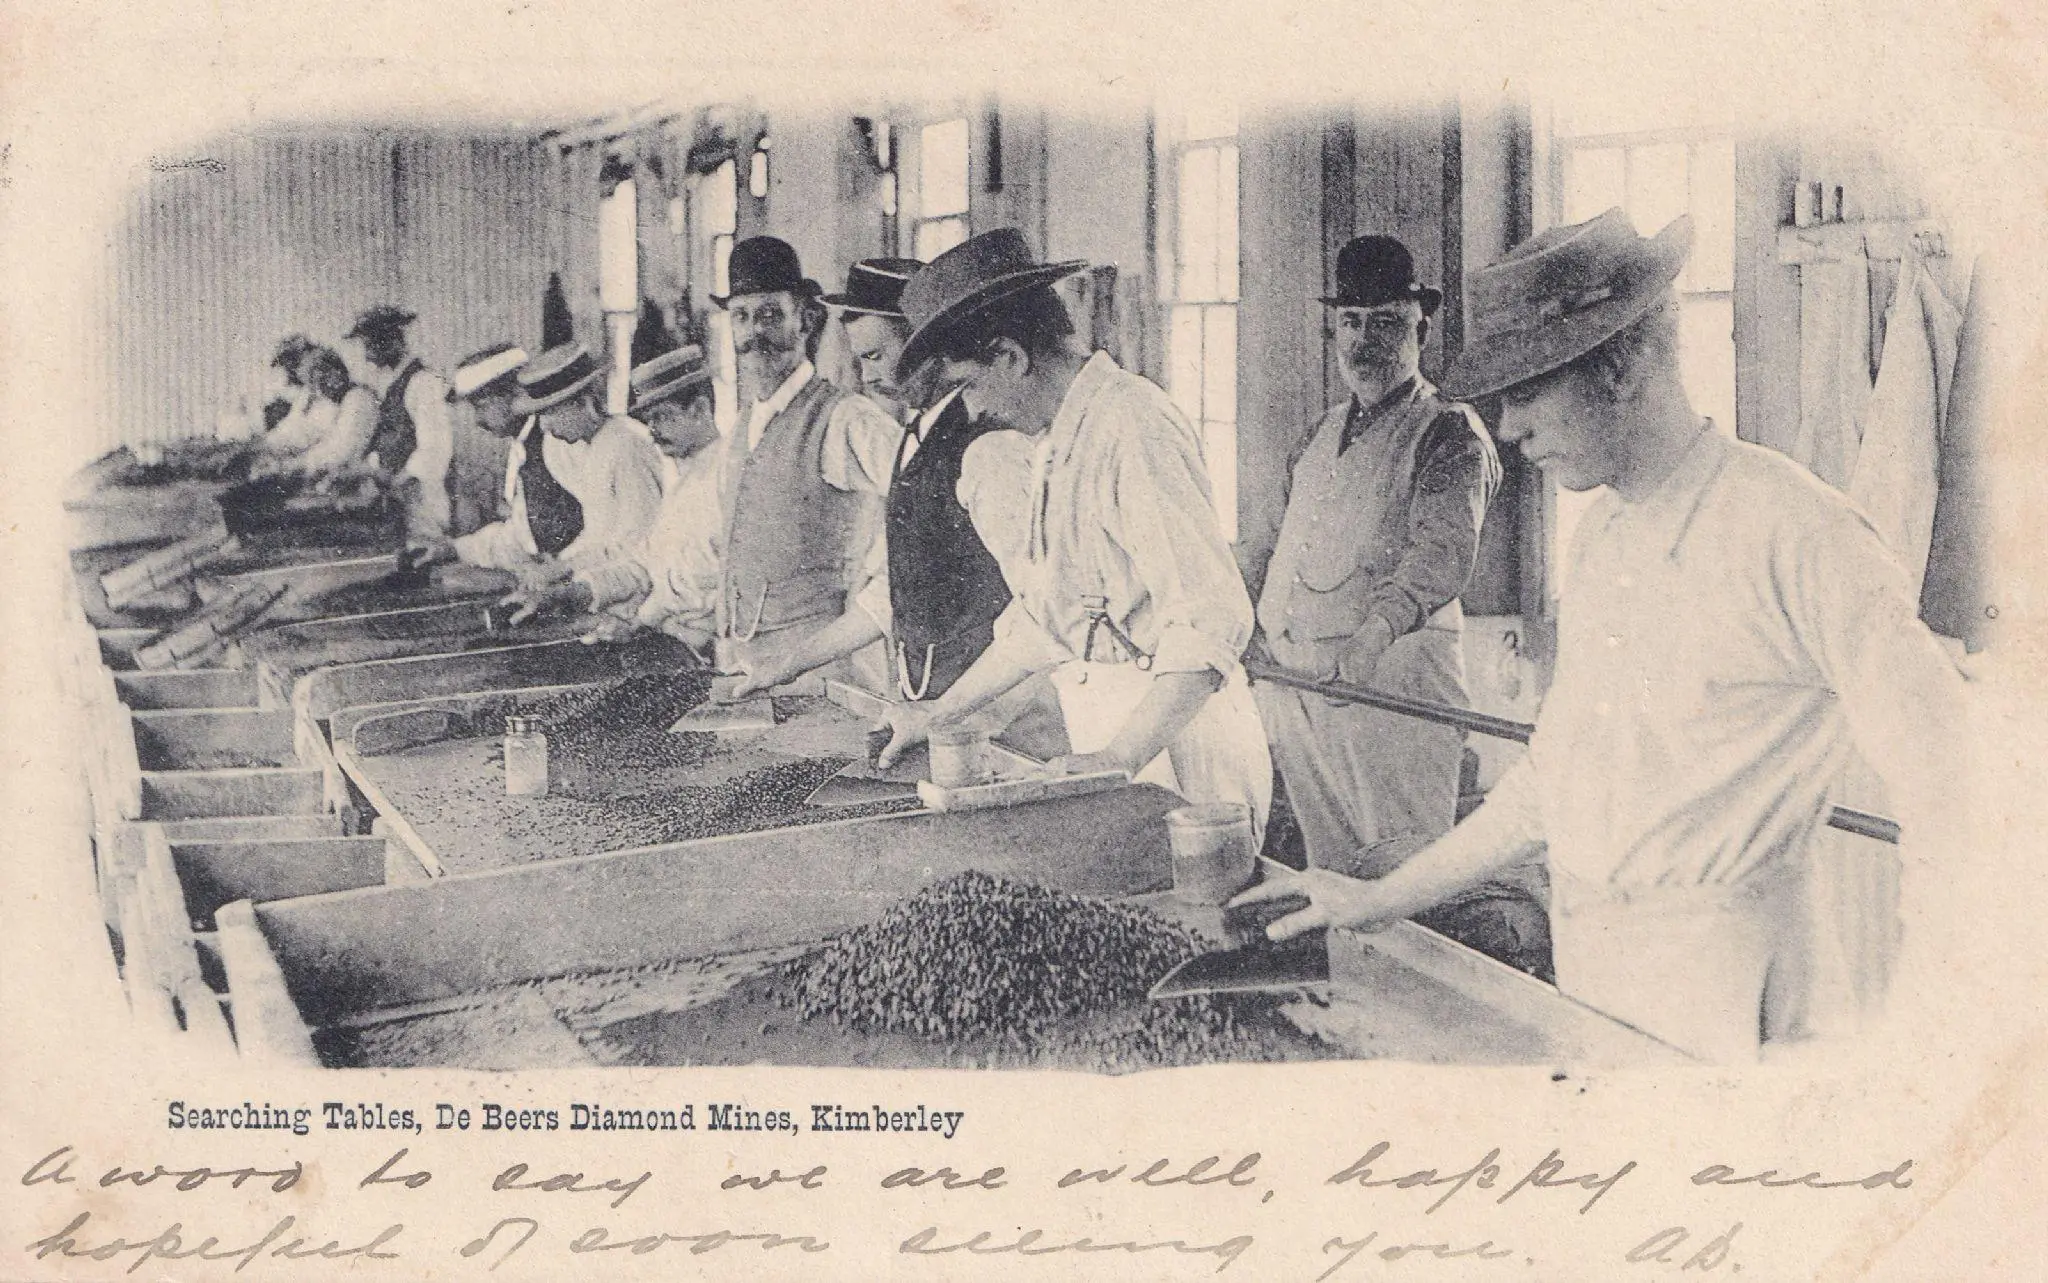 Early History of De Beers Diamonds